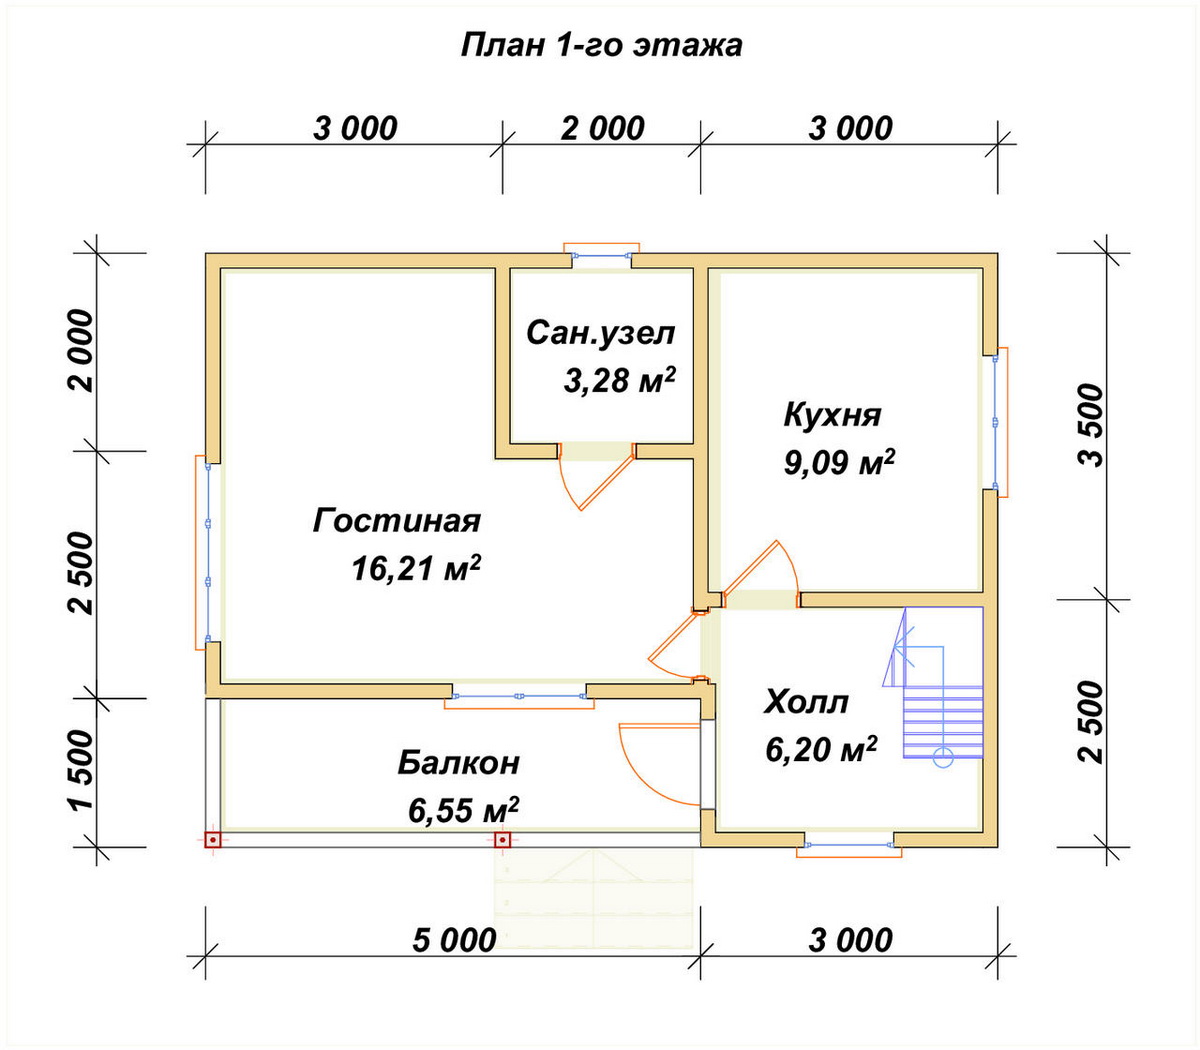 Планировка 1-го этаж дома ДБ-66